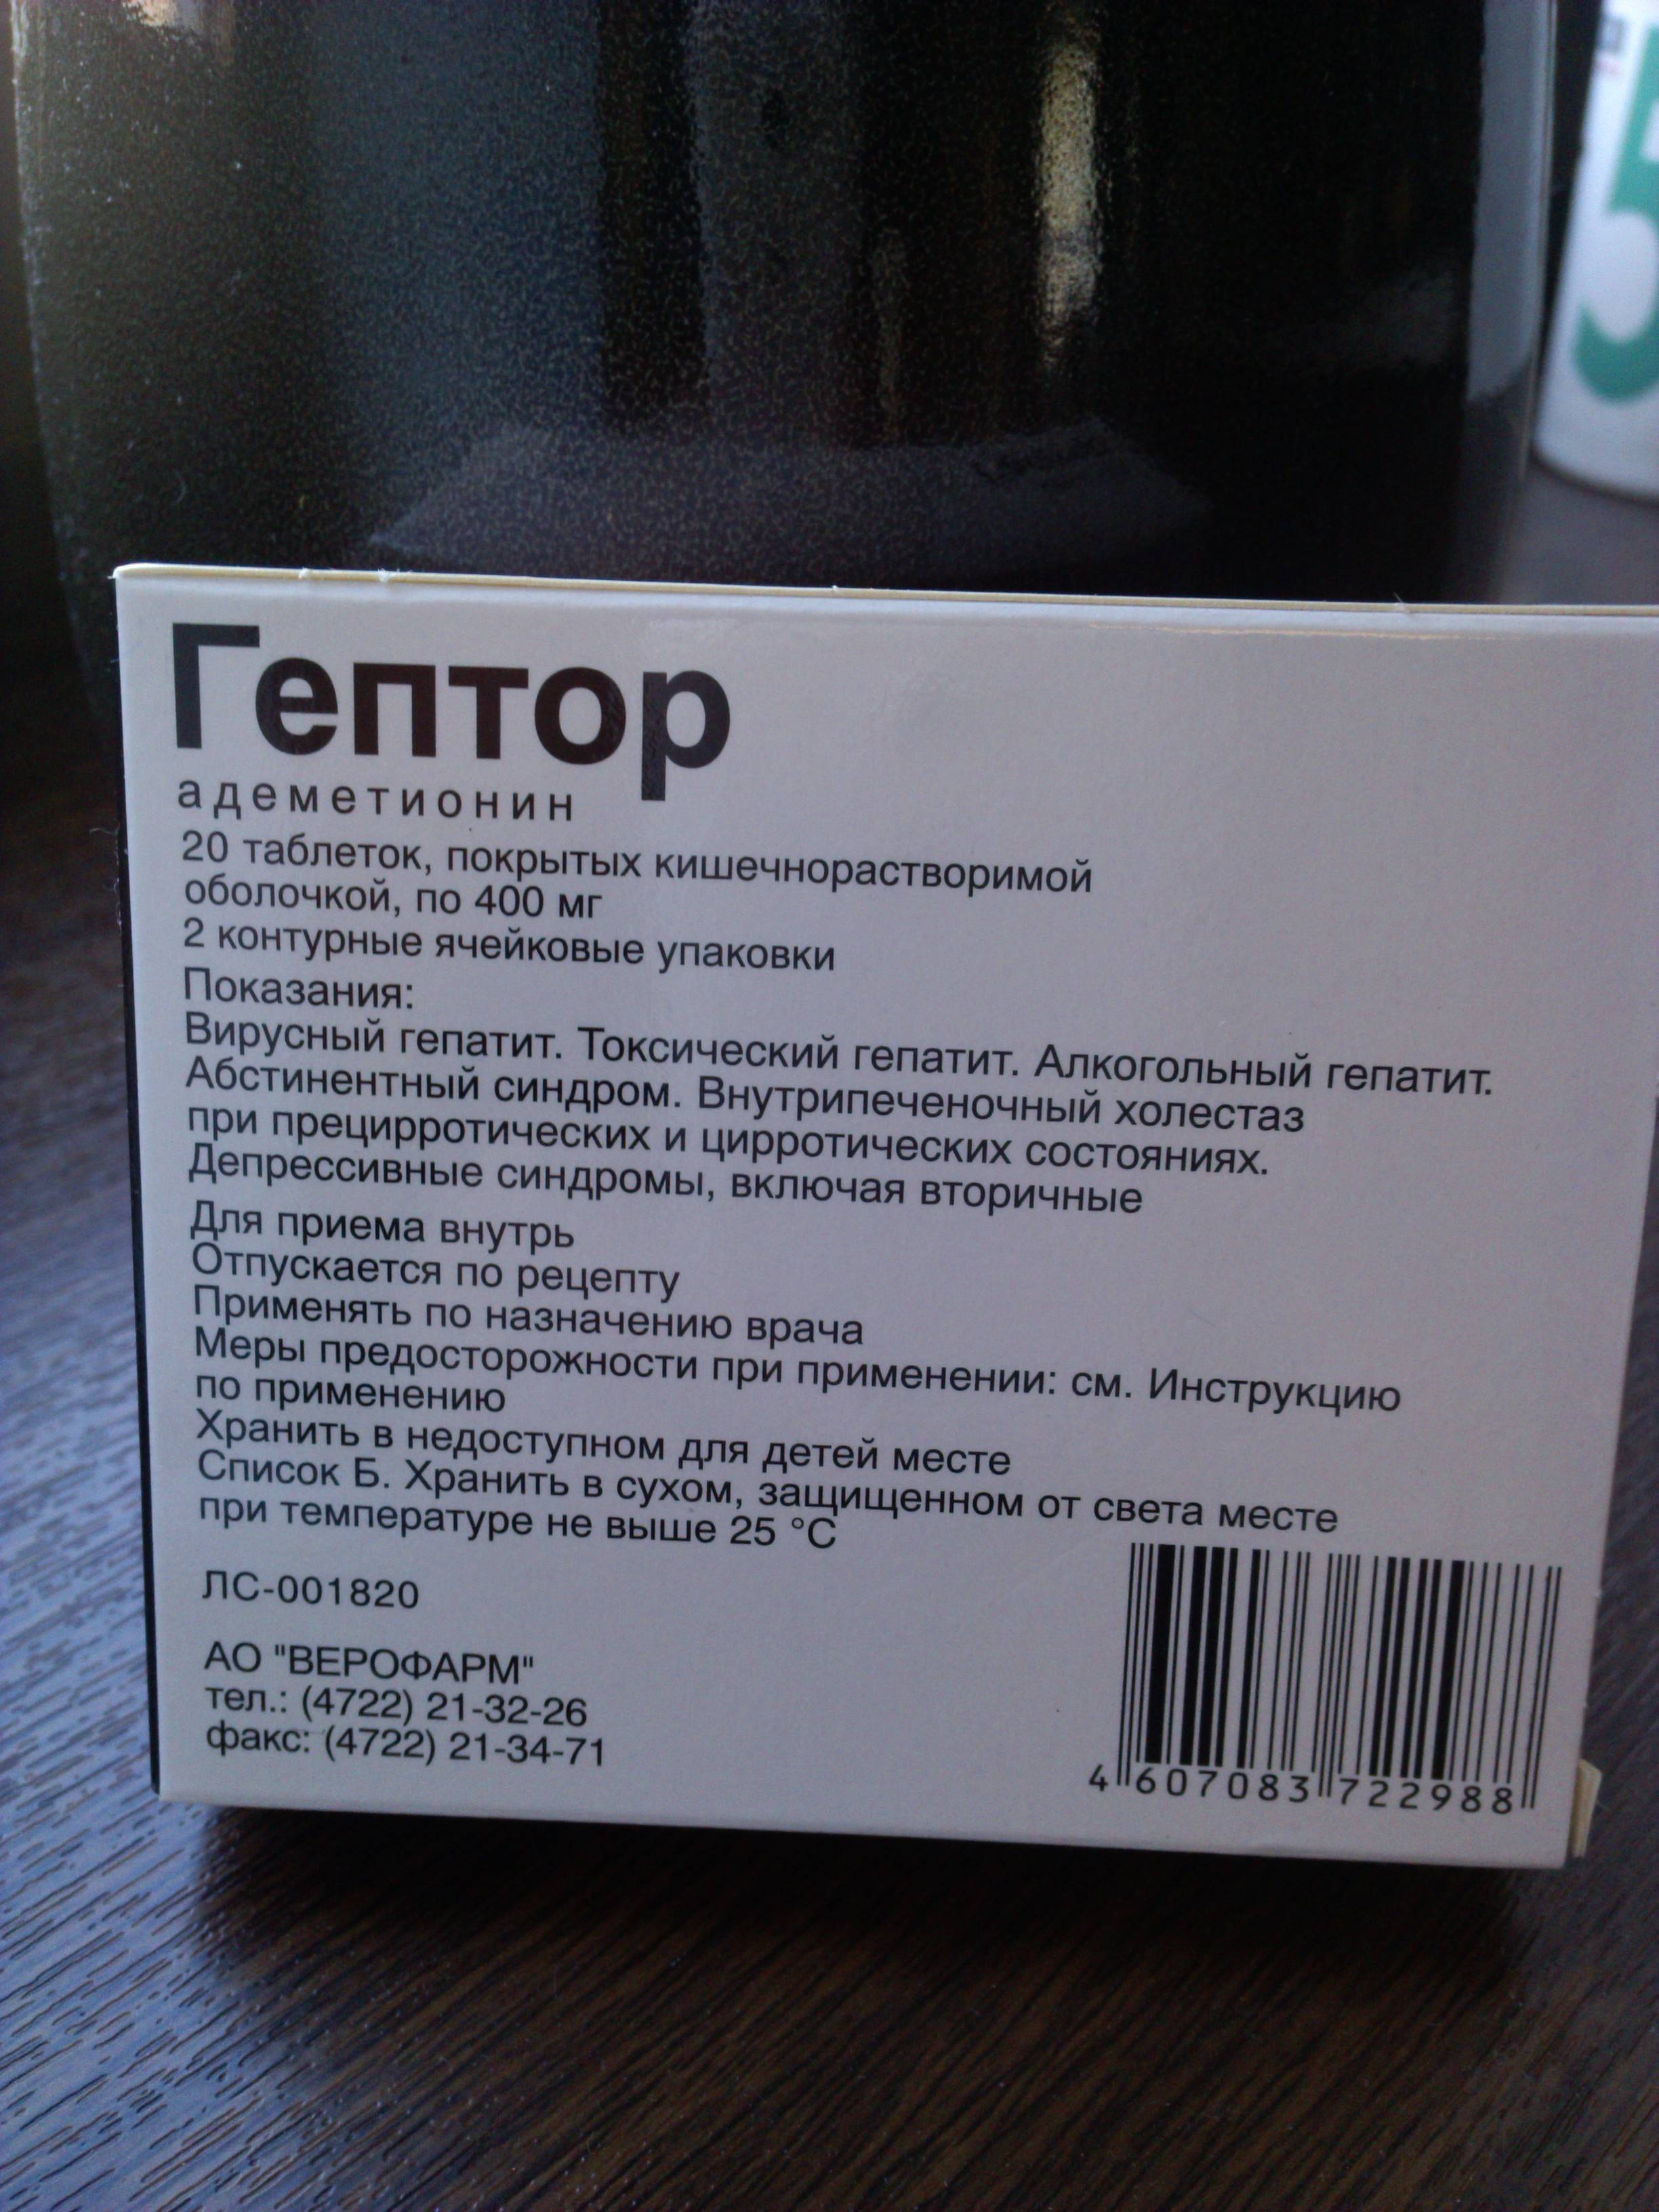 Гептор 400 мг: инструкция по применению, цена, отзывы, аналоги подешевле